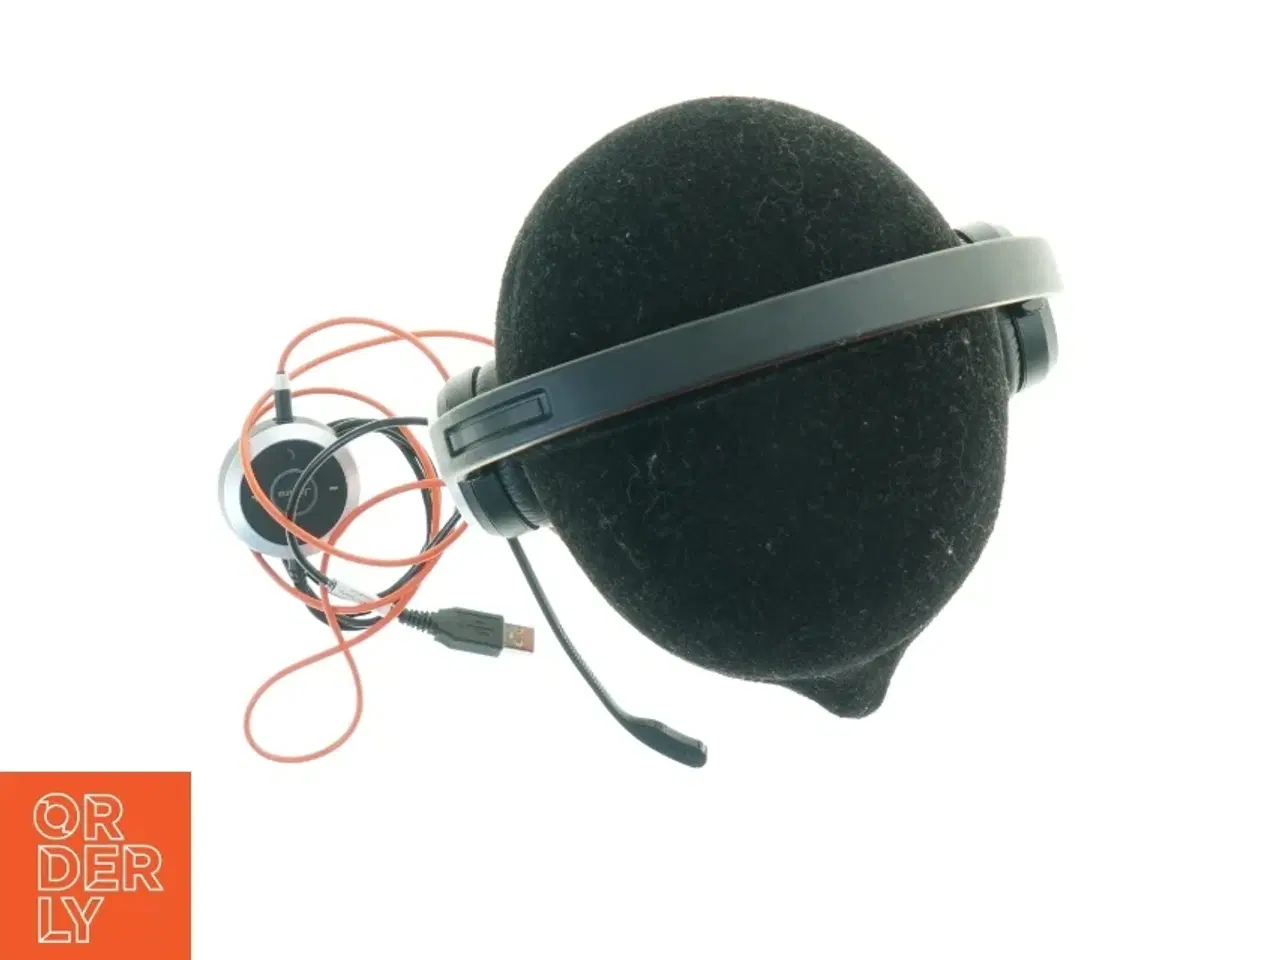 Billede 4 - Jabra headset med mikrofon fra Jabra (str. 17 x, 18 cm)